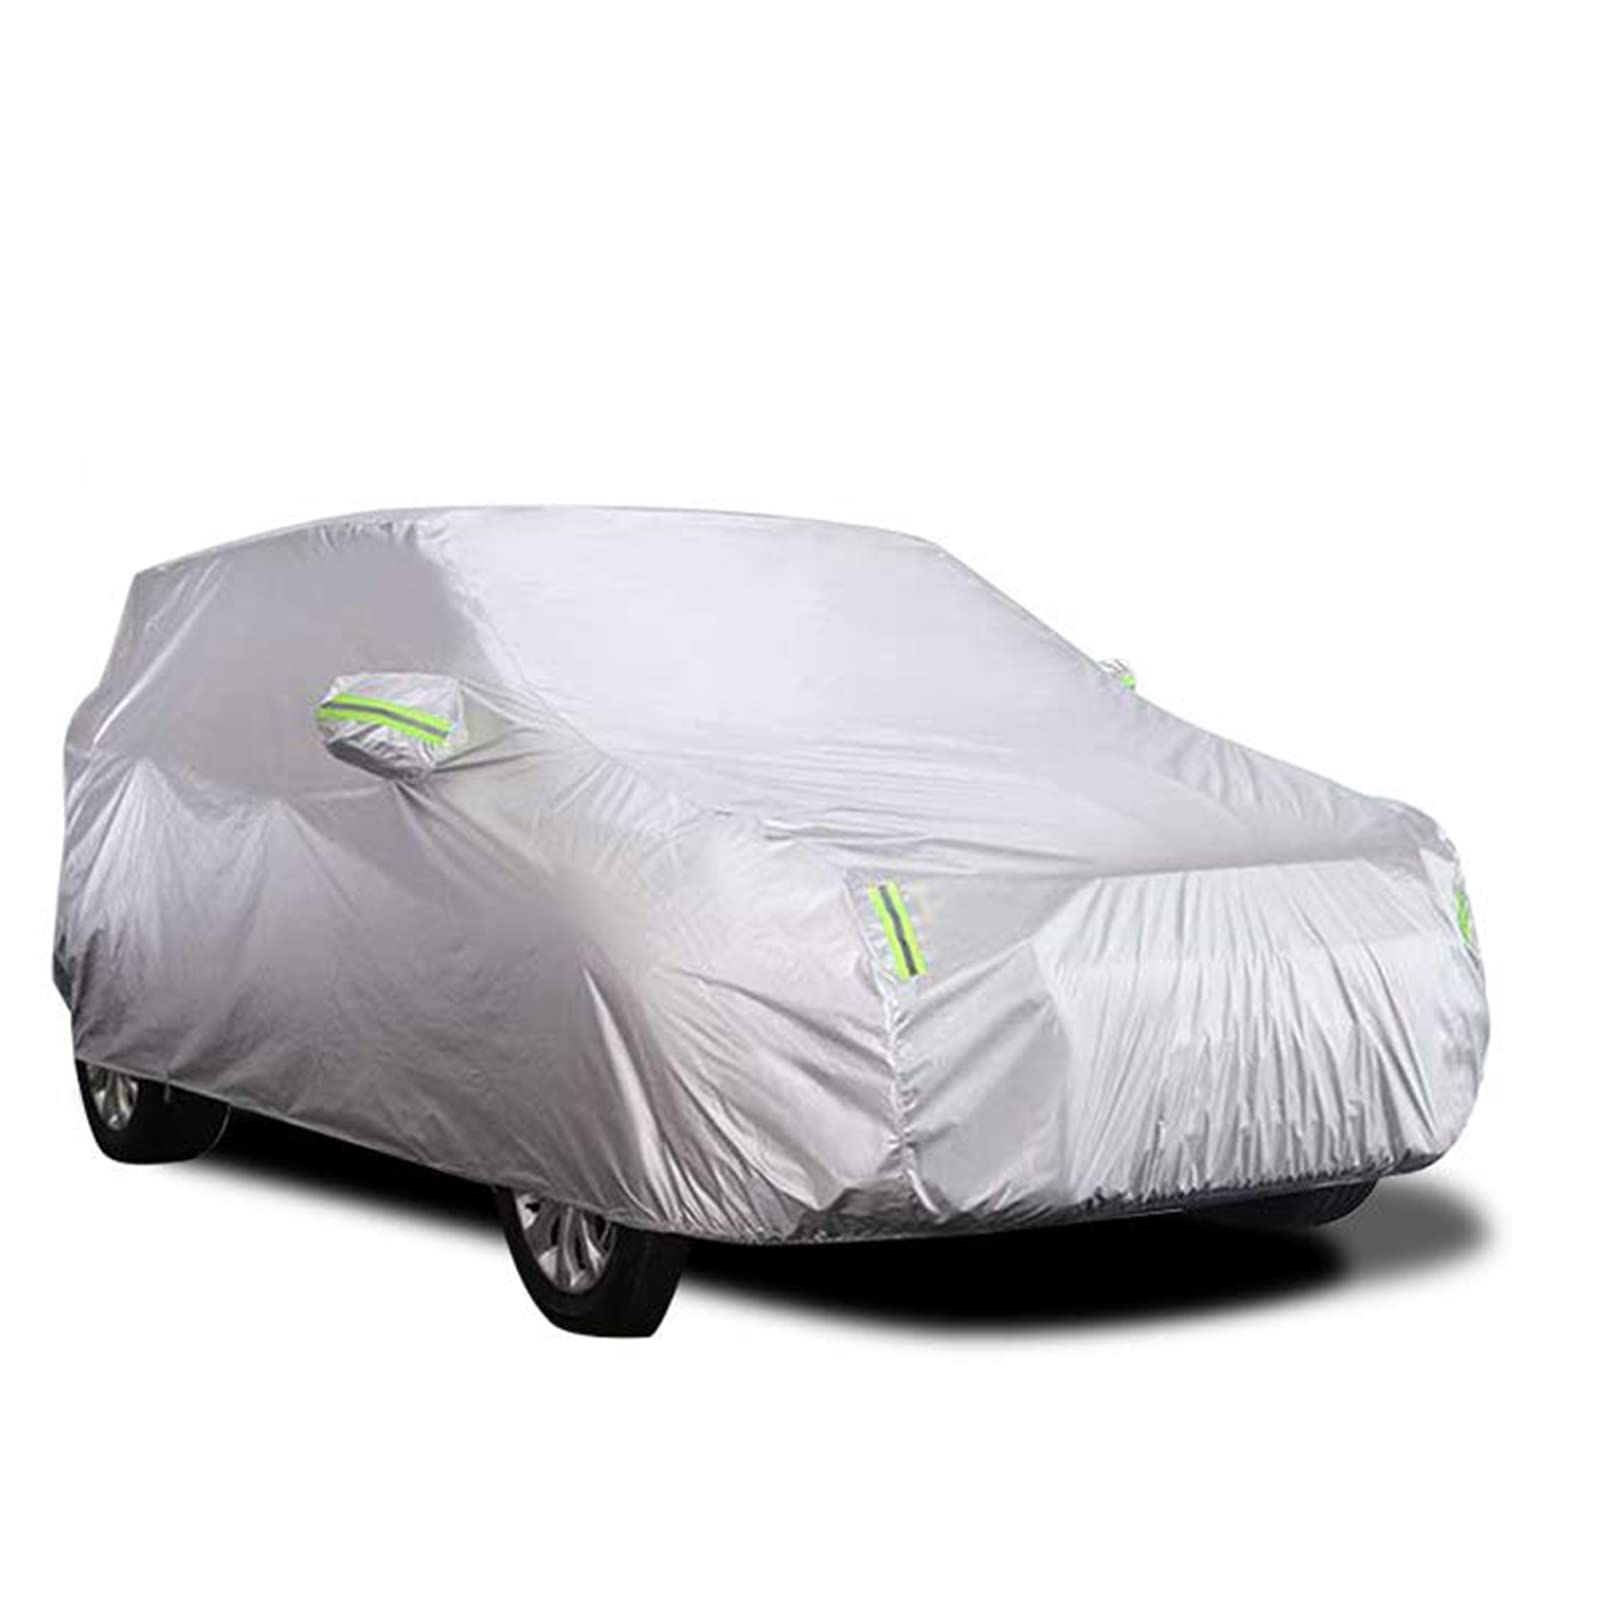 Shkalacar Autoabdeckung für den Außenbereich, Abdeckung für Autos, atmungsaktiv, UV-beständig, staubdicht, mit fester Schnalle, reflektierender Streifen (silberfarben, 4,7 x 1,8 x 1,5 m) von Shkalacar